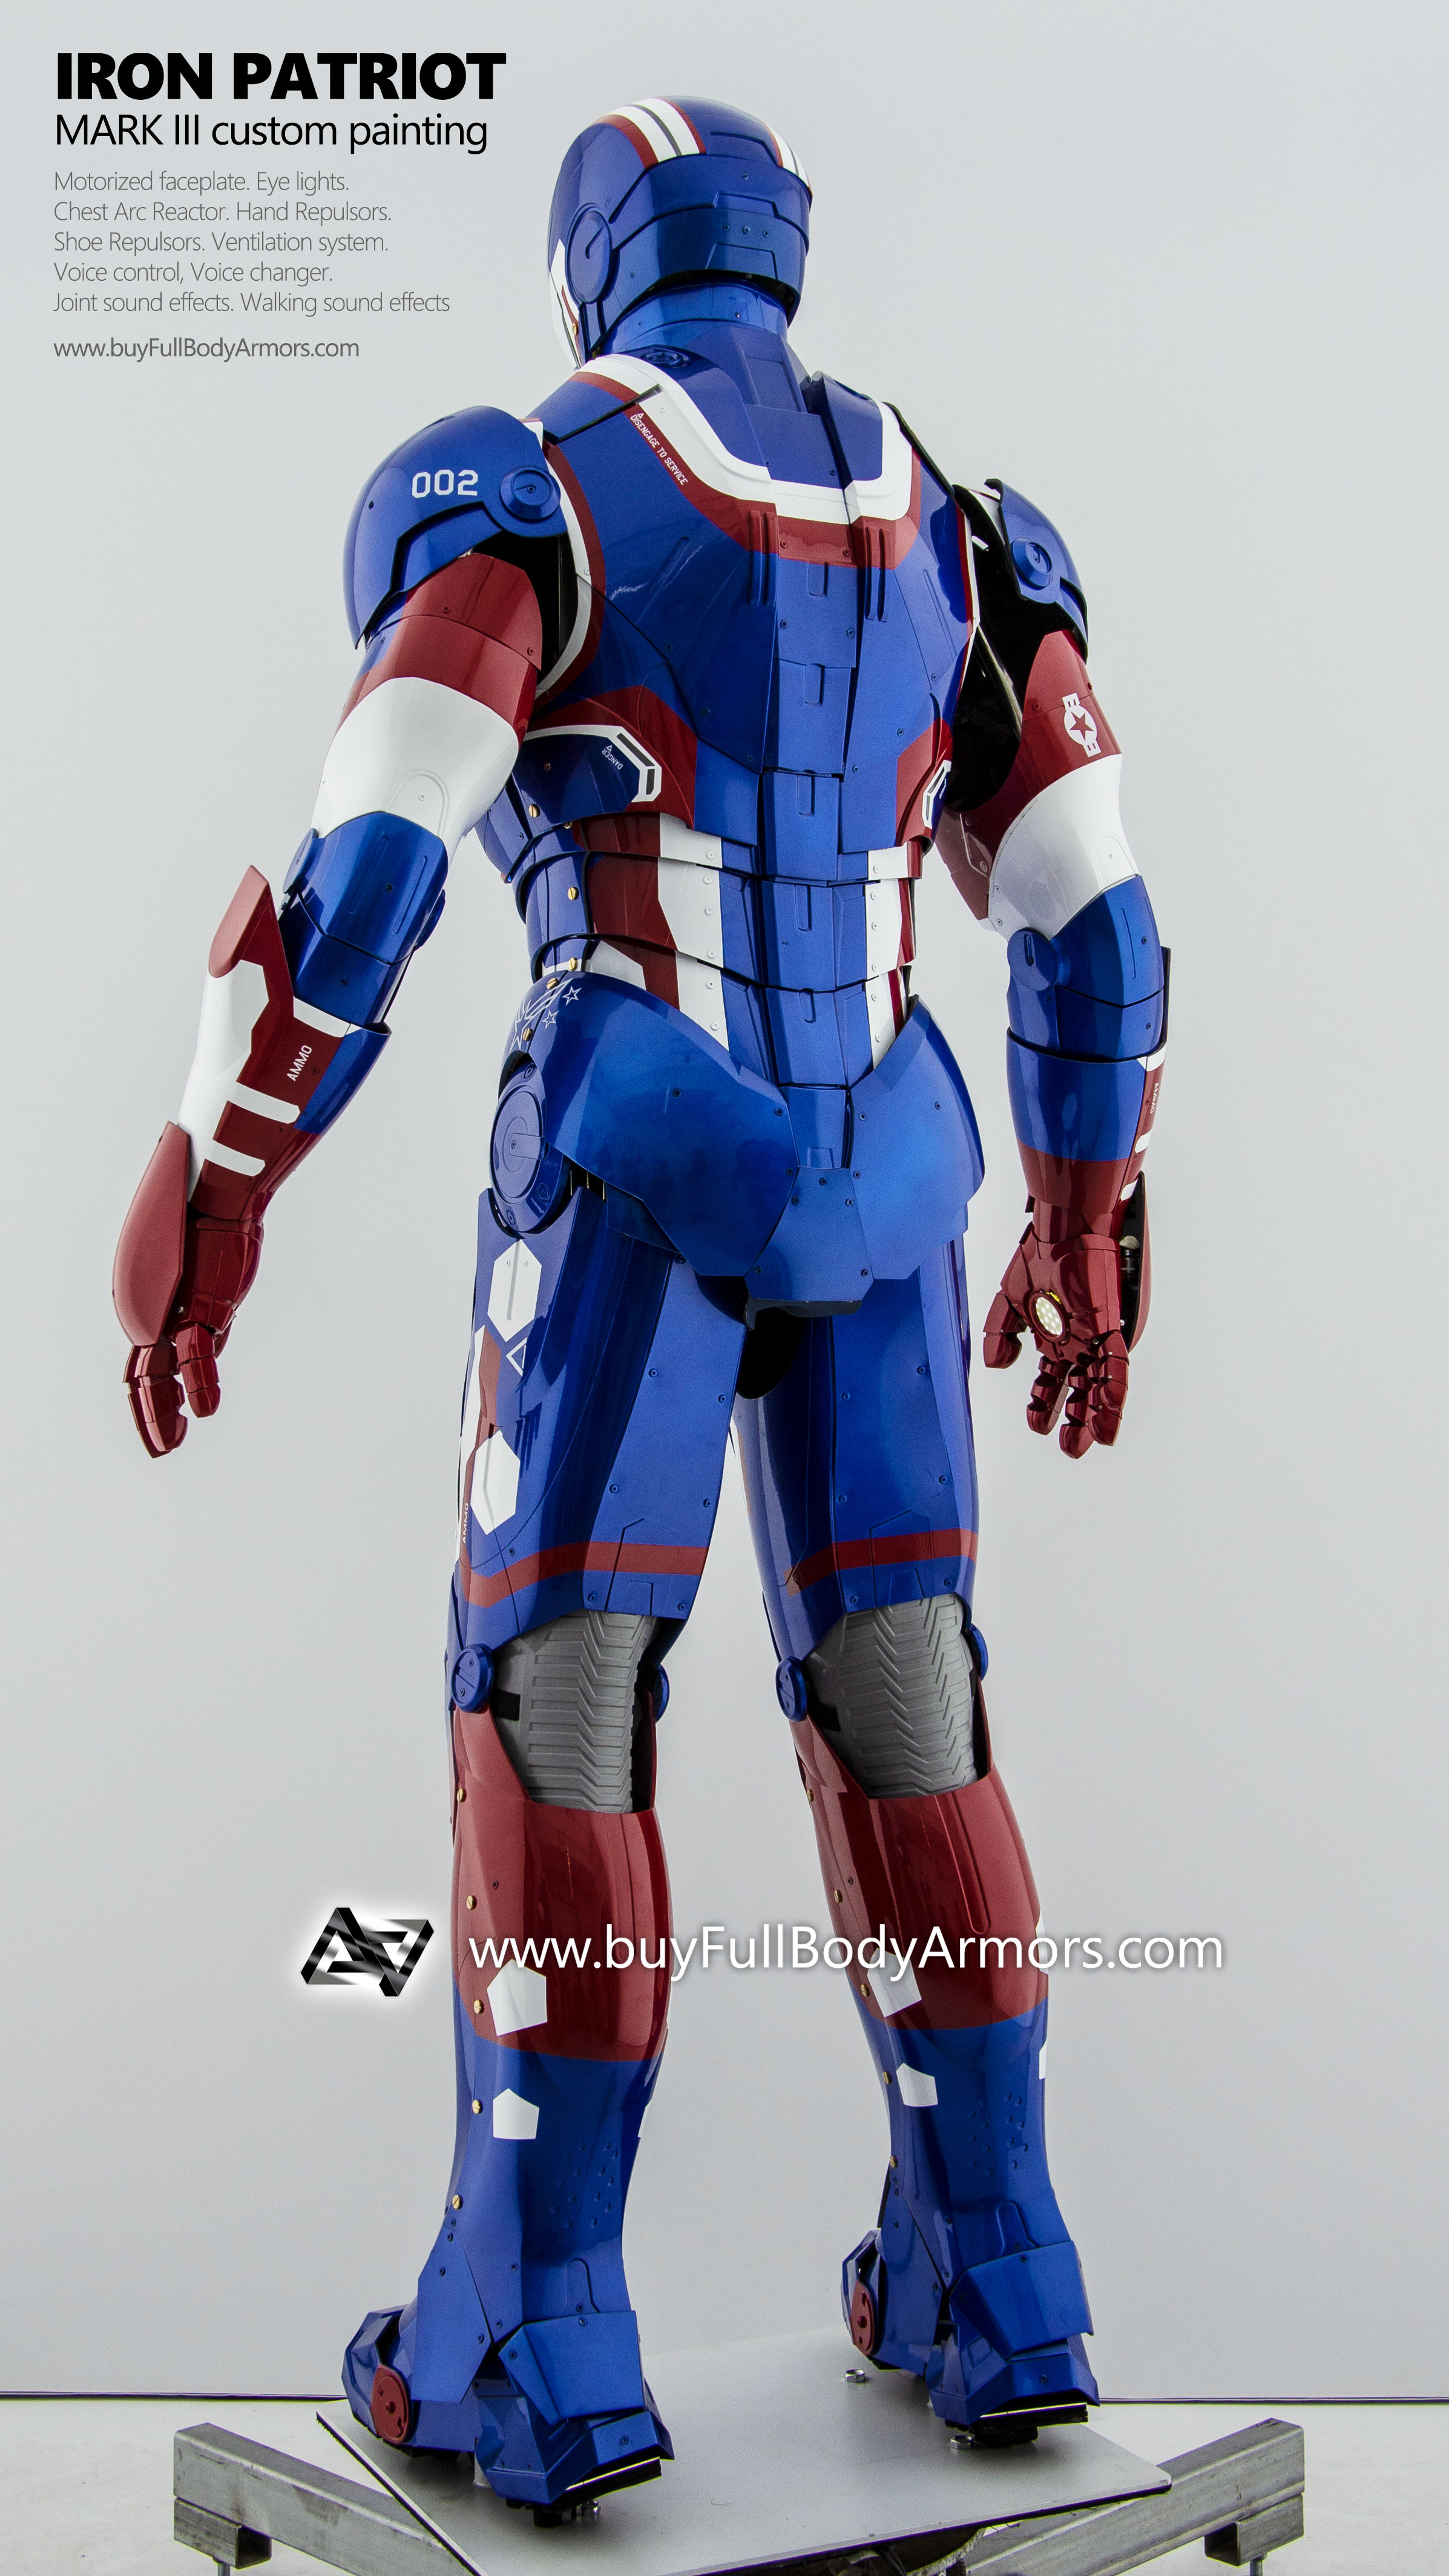 wearable Iron Patriot Iron Man Suit Mark 3 III Armor Costume 4